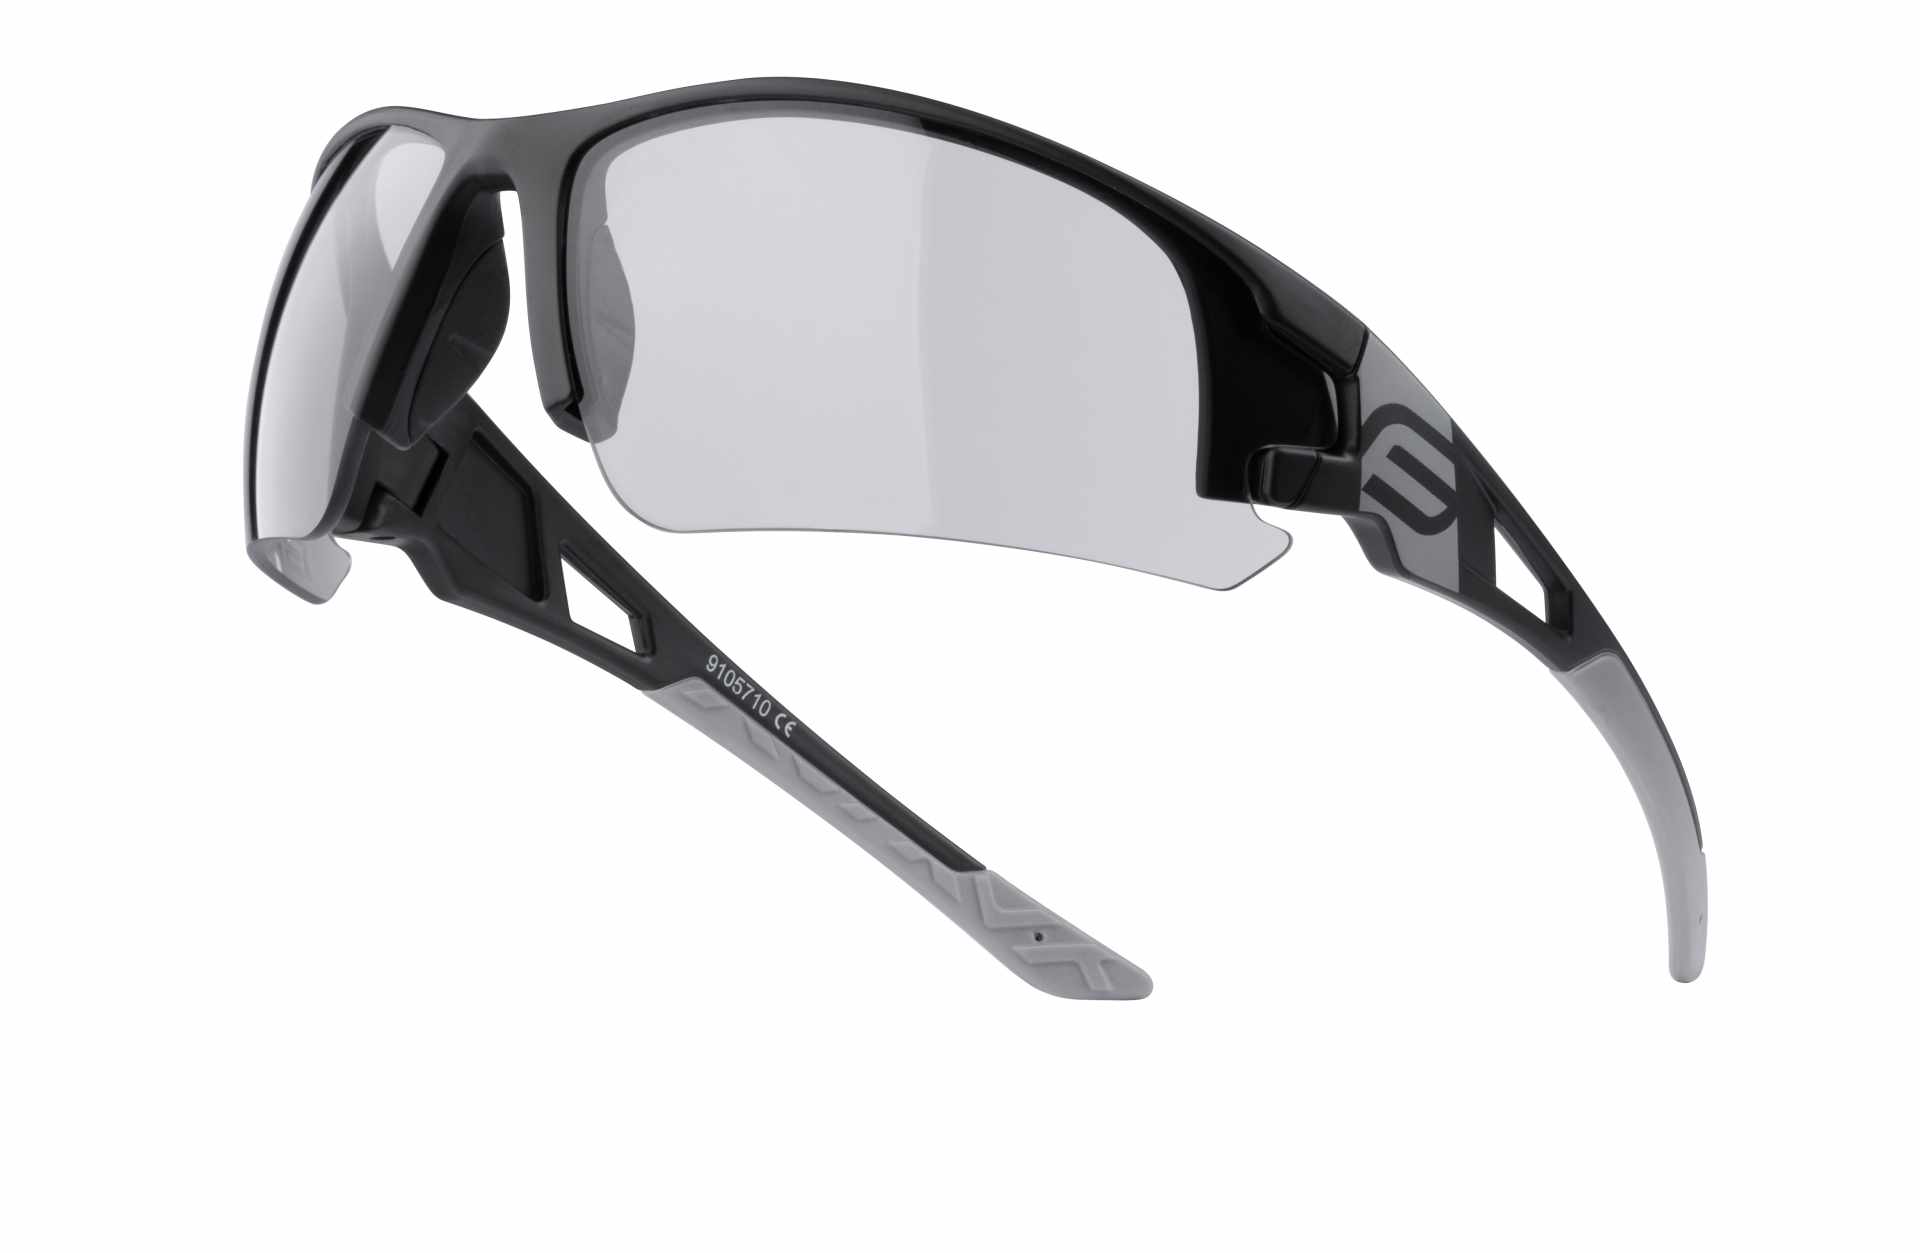 brýle FORCE CALIBRE černé, fotochromatická skla